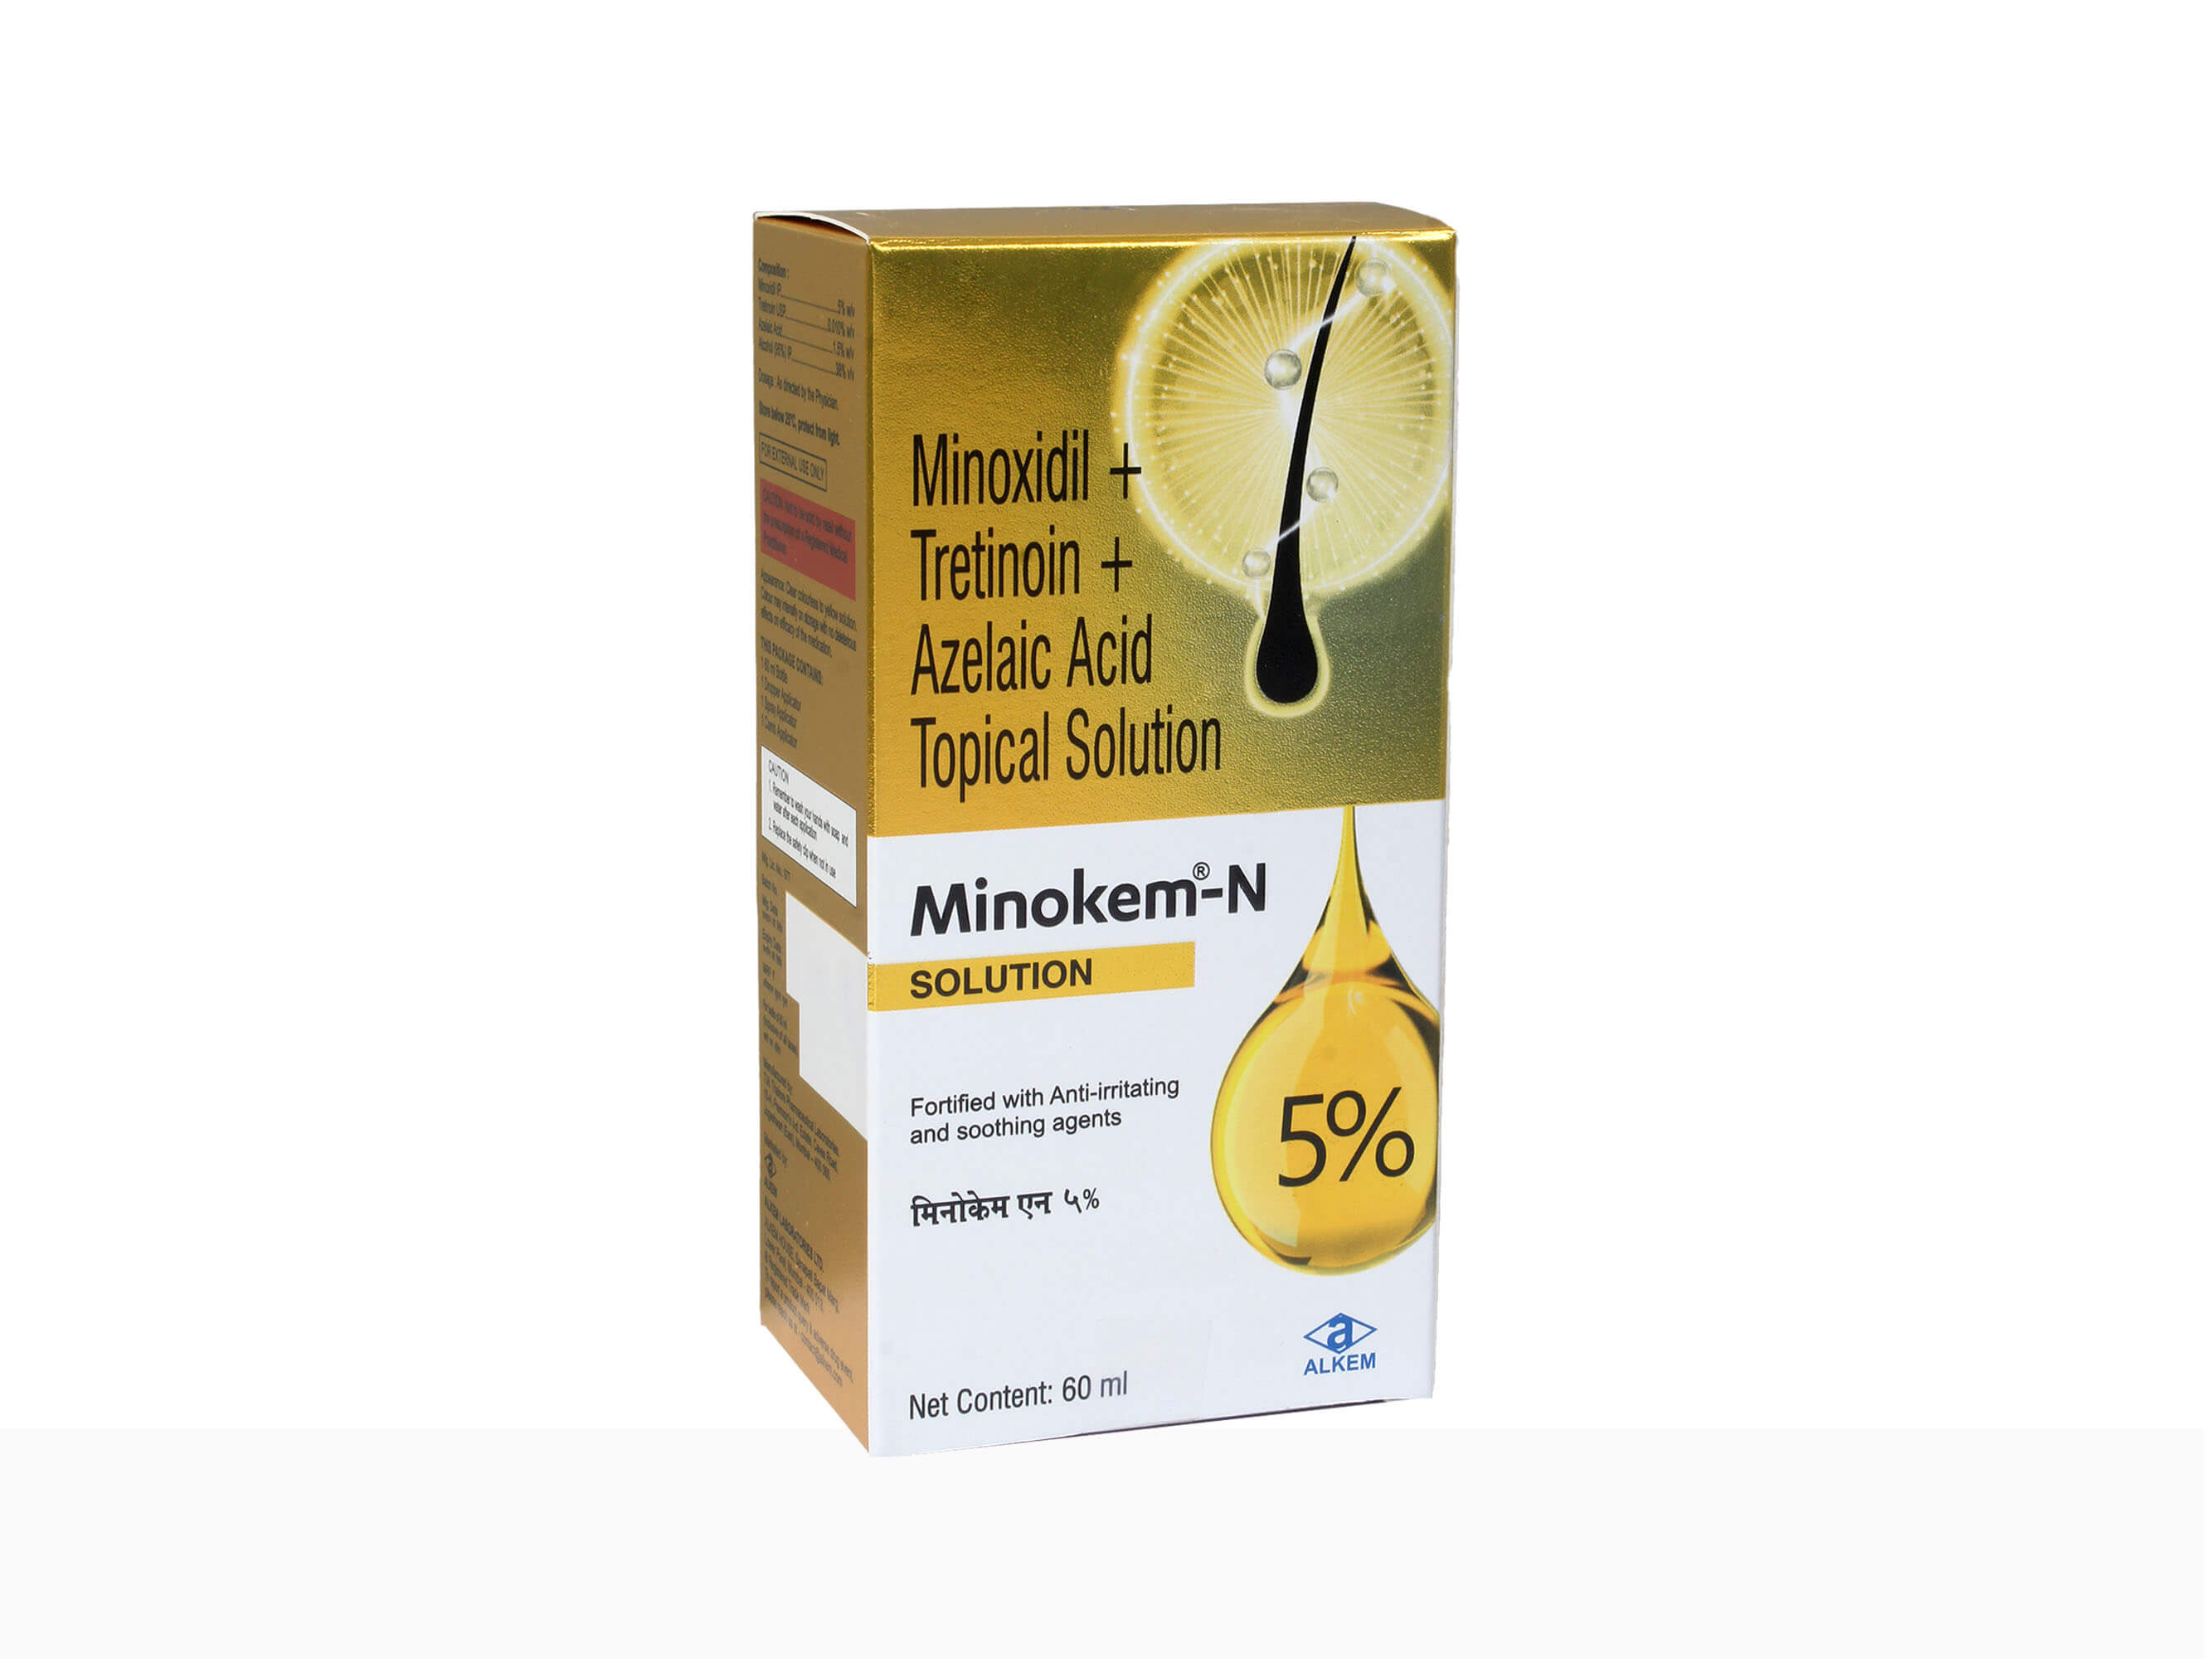 Minokem-N 5% Solution - Clinikally